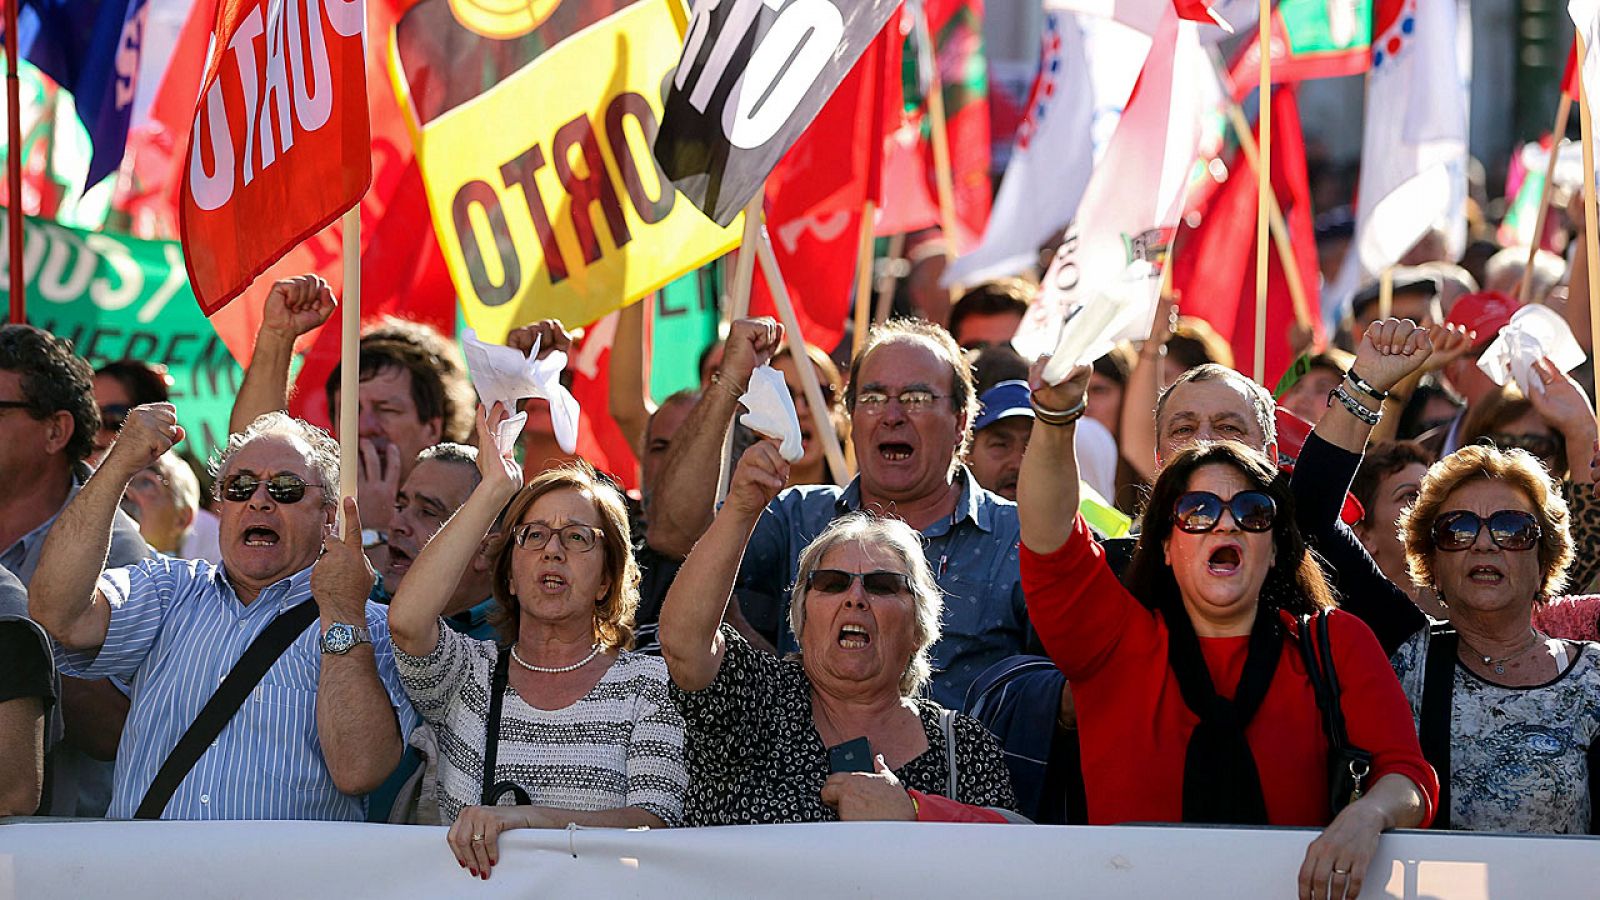 Manifestantes reunidos por el mayor sindicato de Portugal muestran su respaldo a un acuerdo de izquierdas que ponga fin a la austeridad.